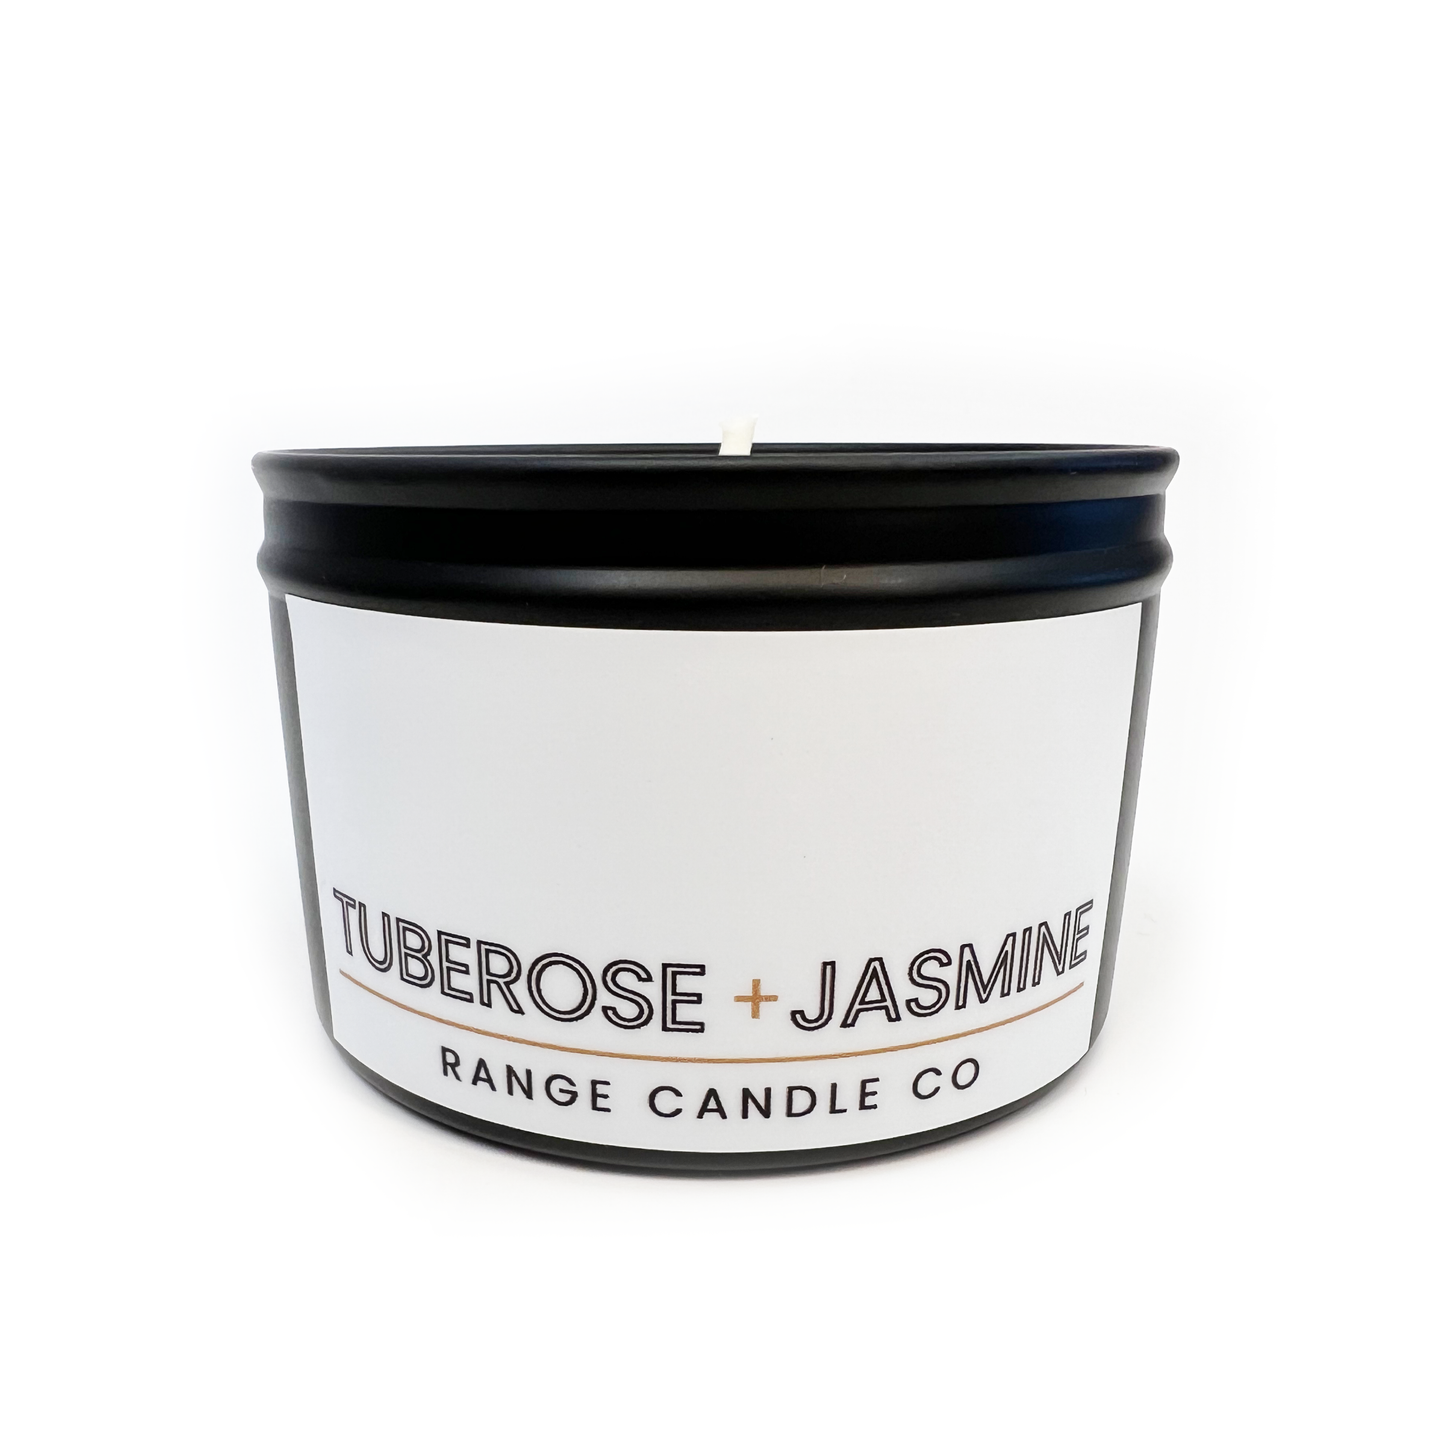 Tuberose + Jasmine Soy Candle